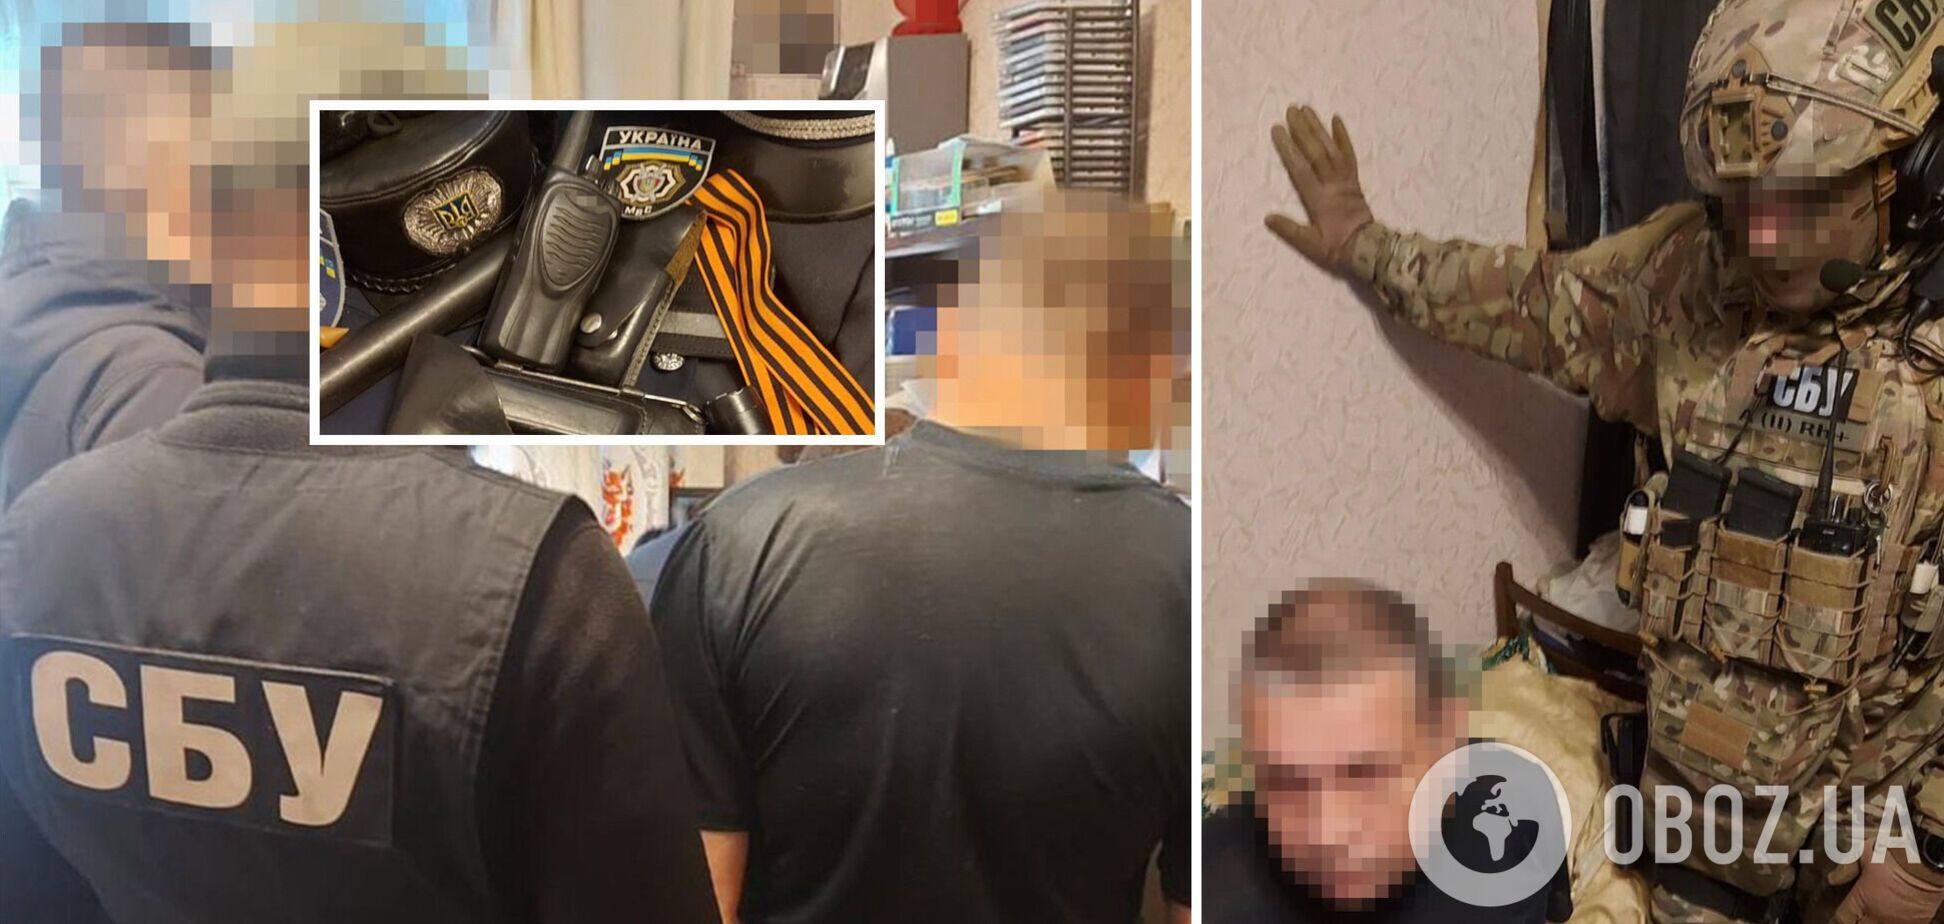 У Запоріжжі затримали колишнього міліціонера, який хотів вступити до ПВК 'Вагнер' і воювати проти України. Фото й відео